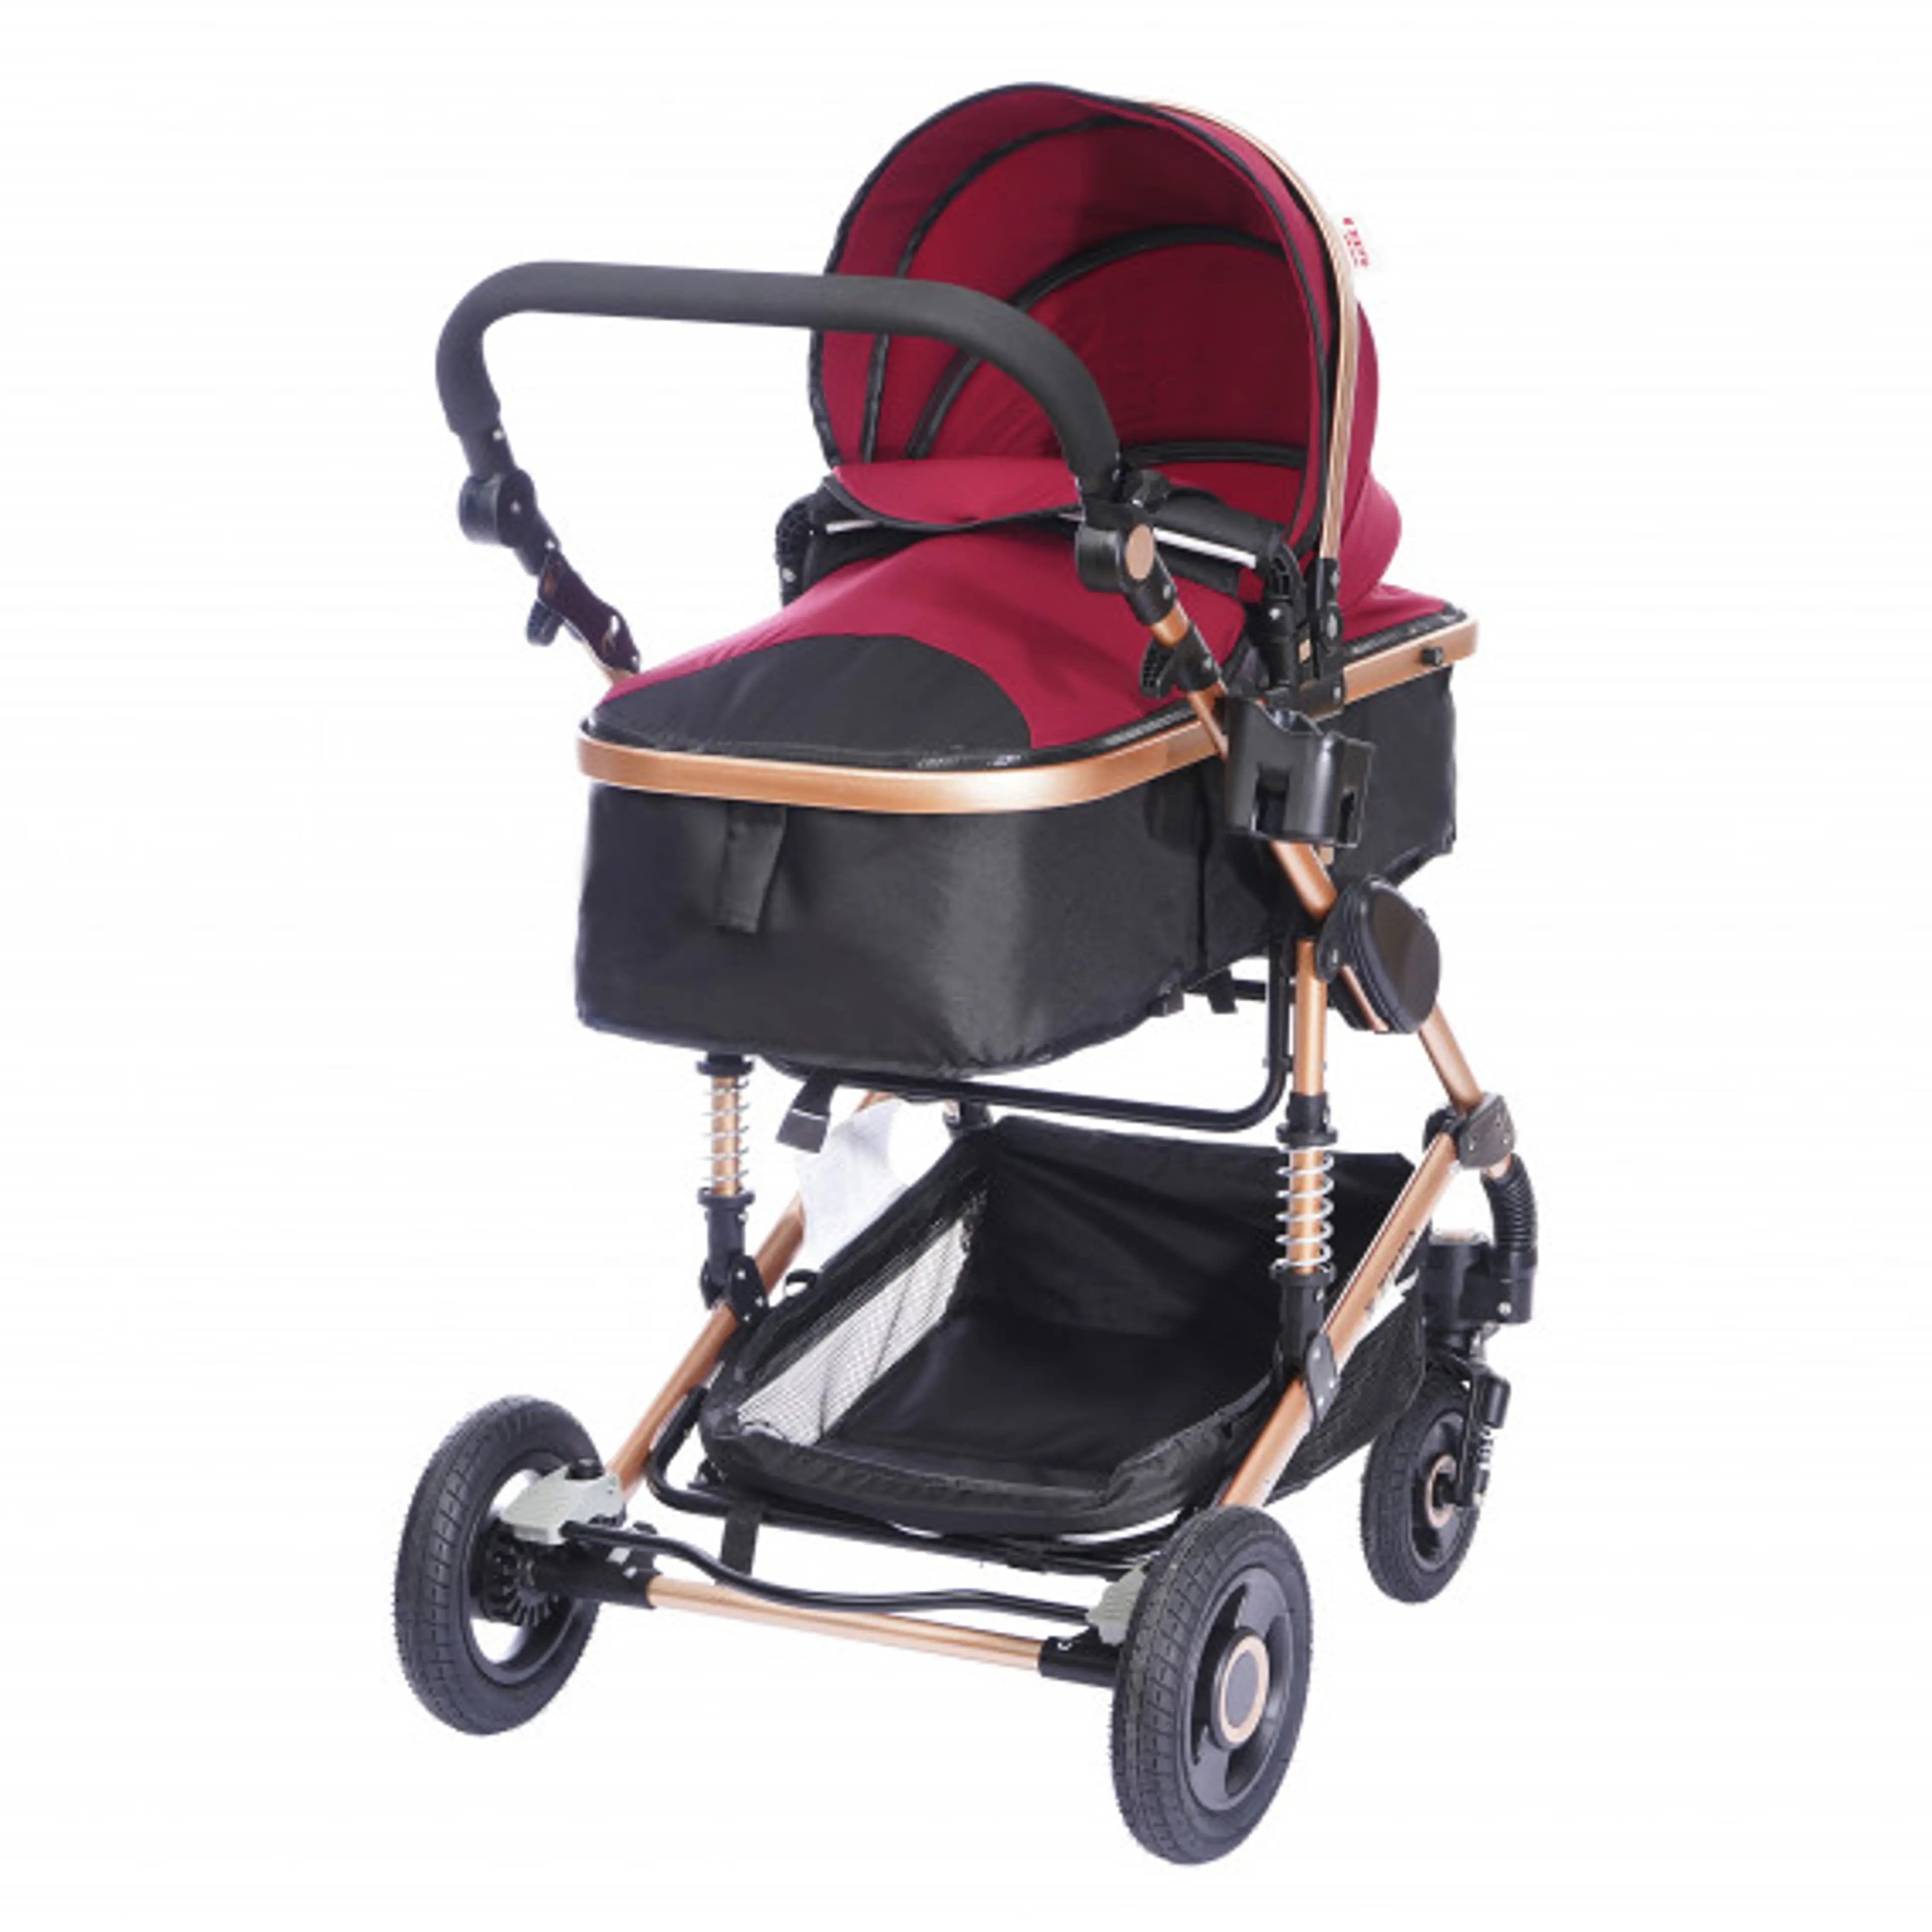 Комбинирана детска количка FONTANA 3 в 1 с швейцарска конструкция и дизайн, червена